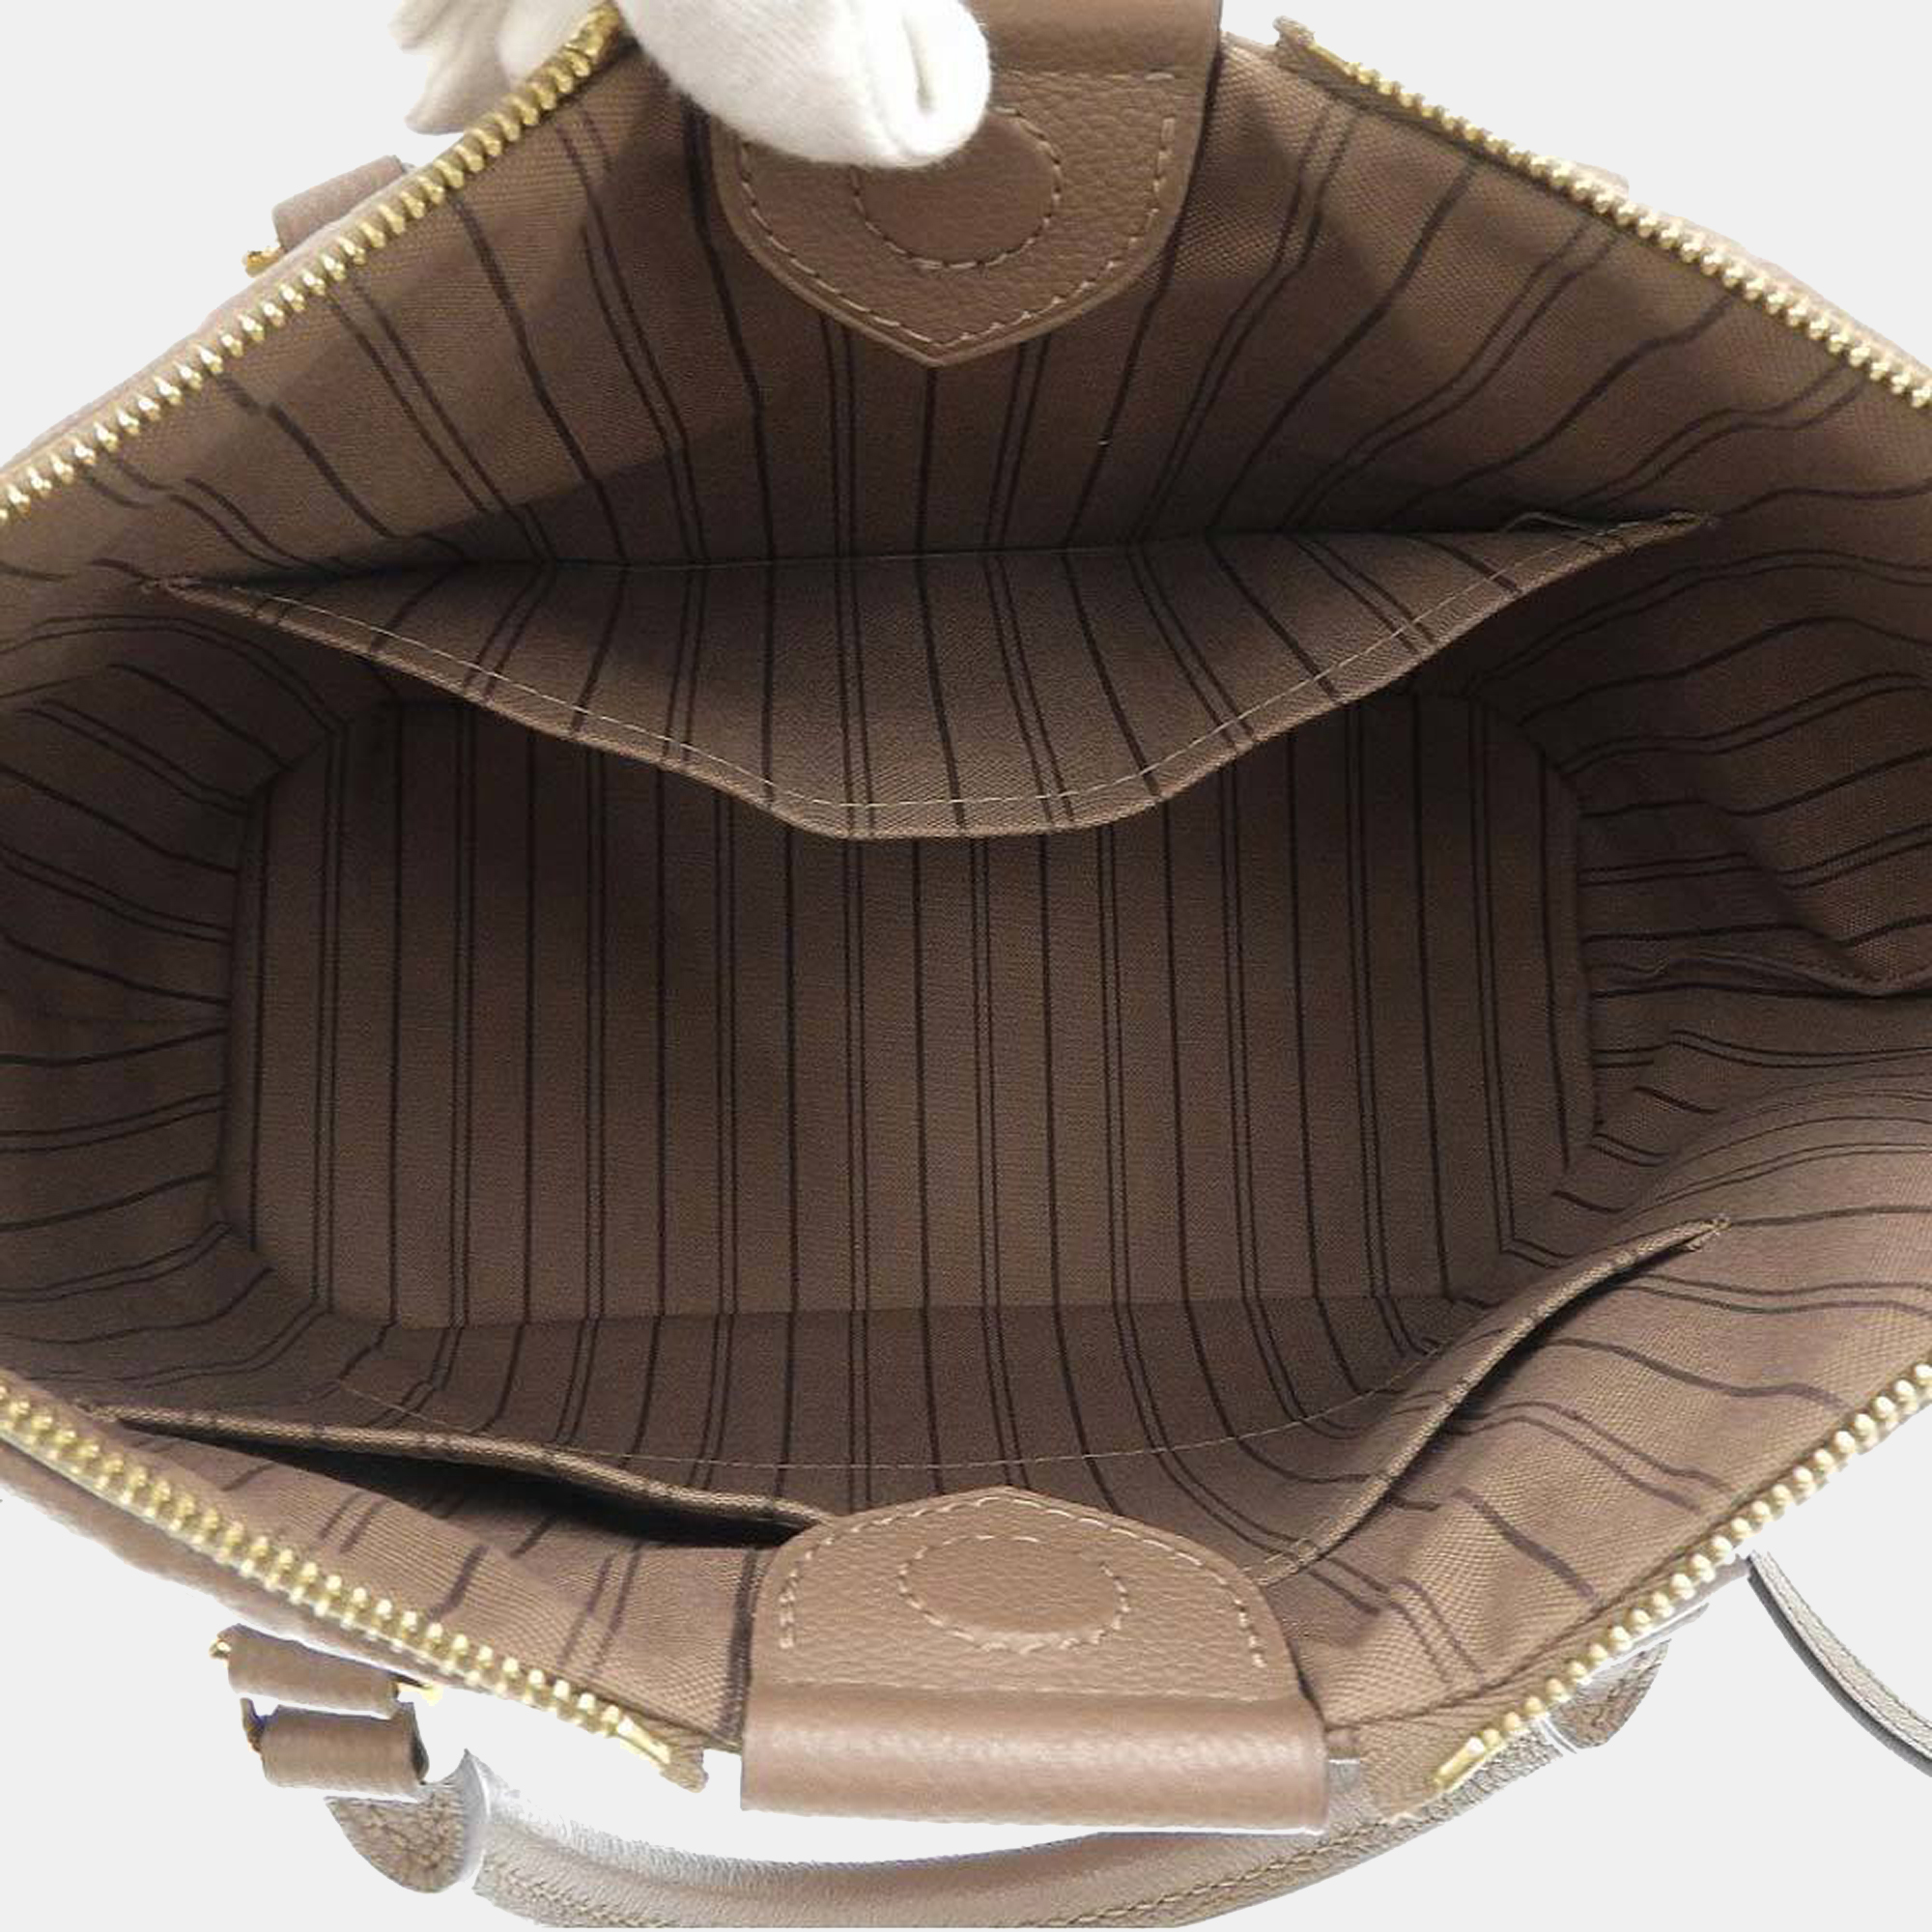 Louis Vuitton Beige Monogram Empreinte Leather Mazarine MM Top Handle Bag